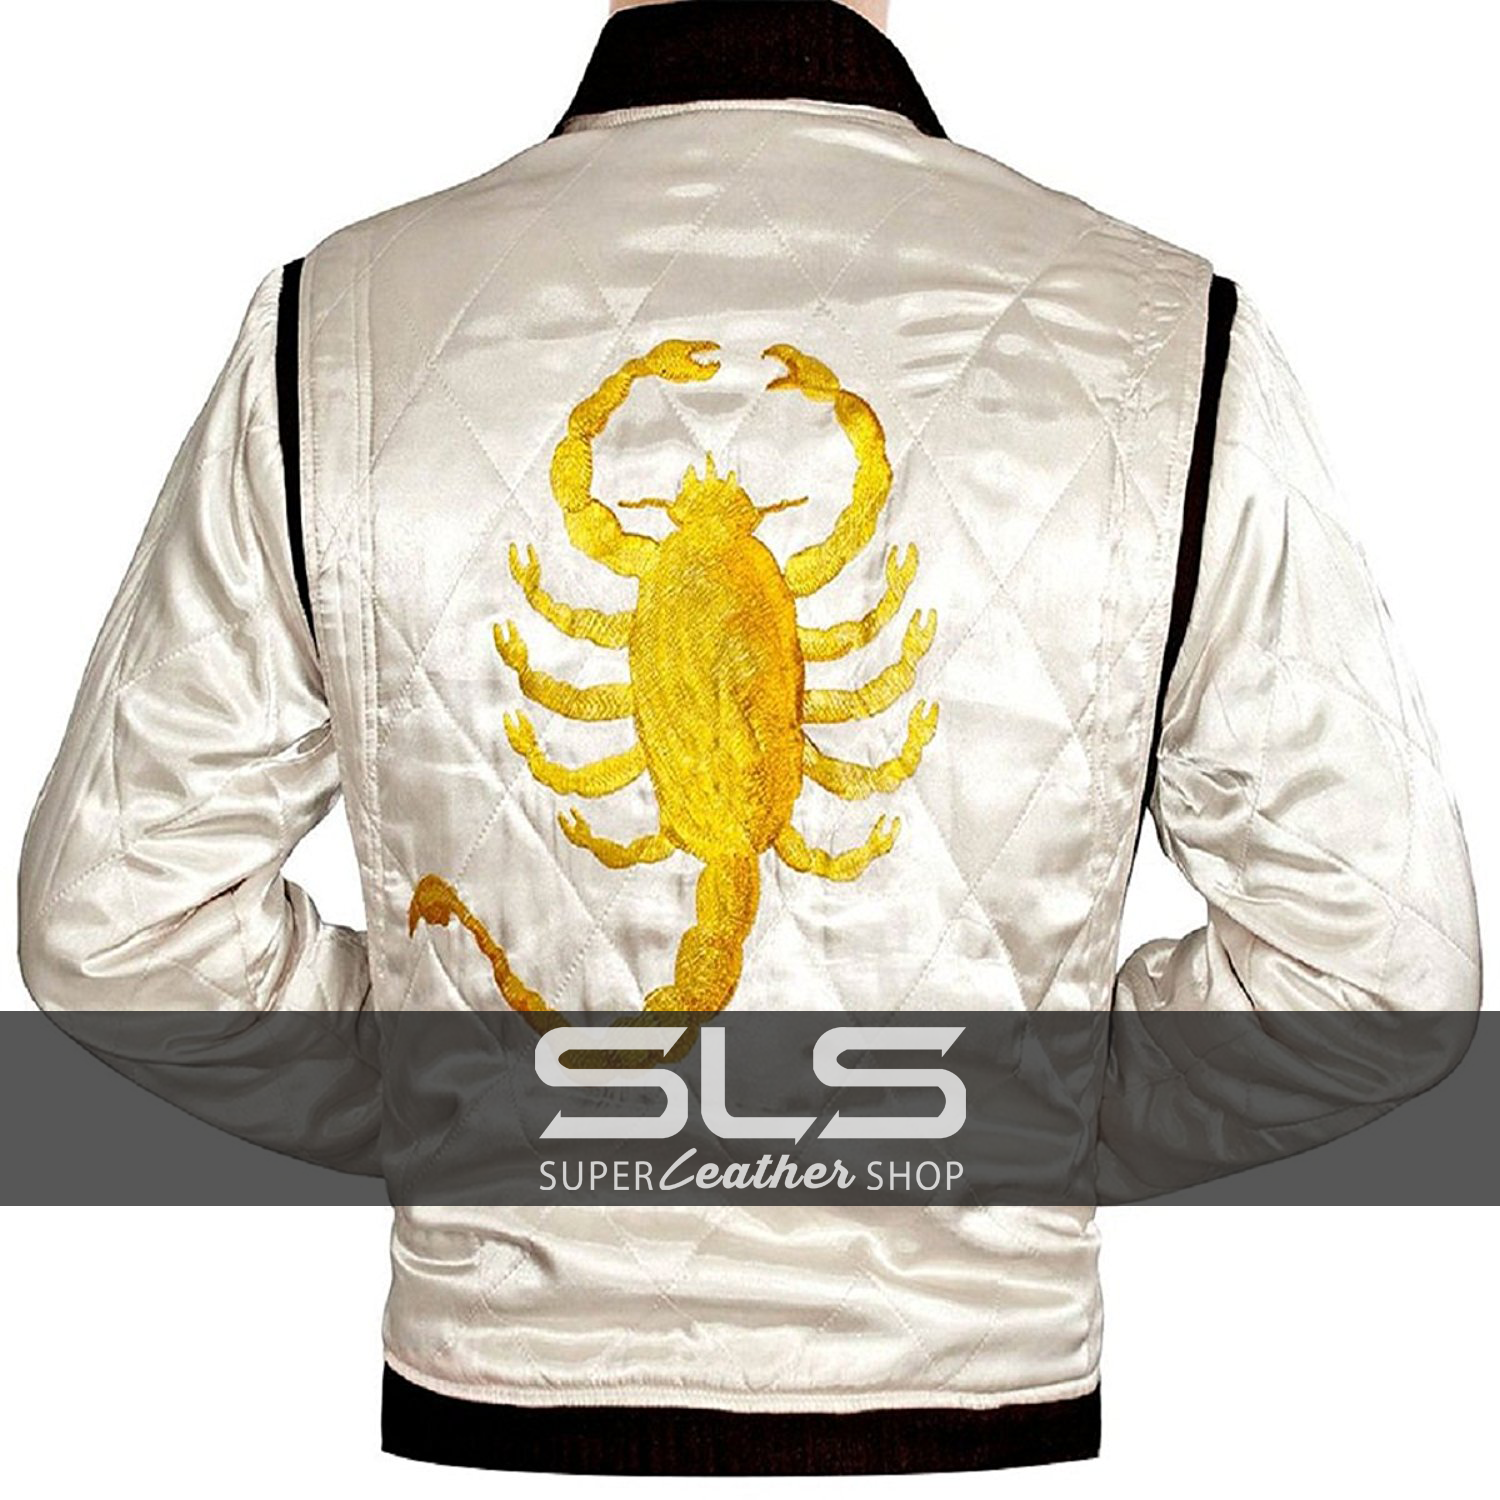 Bestzo Men’s Fashion Ryan Gosling Famous Drive Scorpion Jacket White 